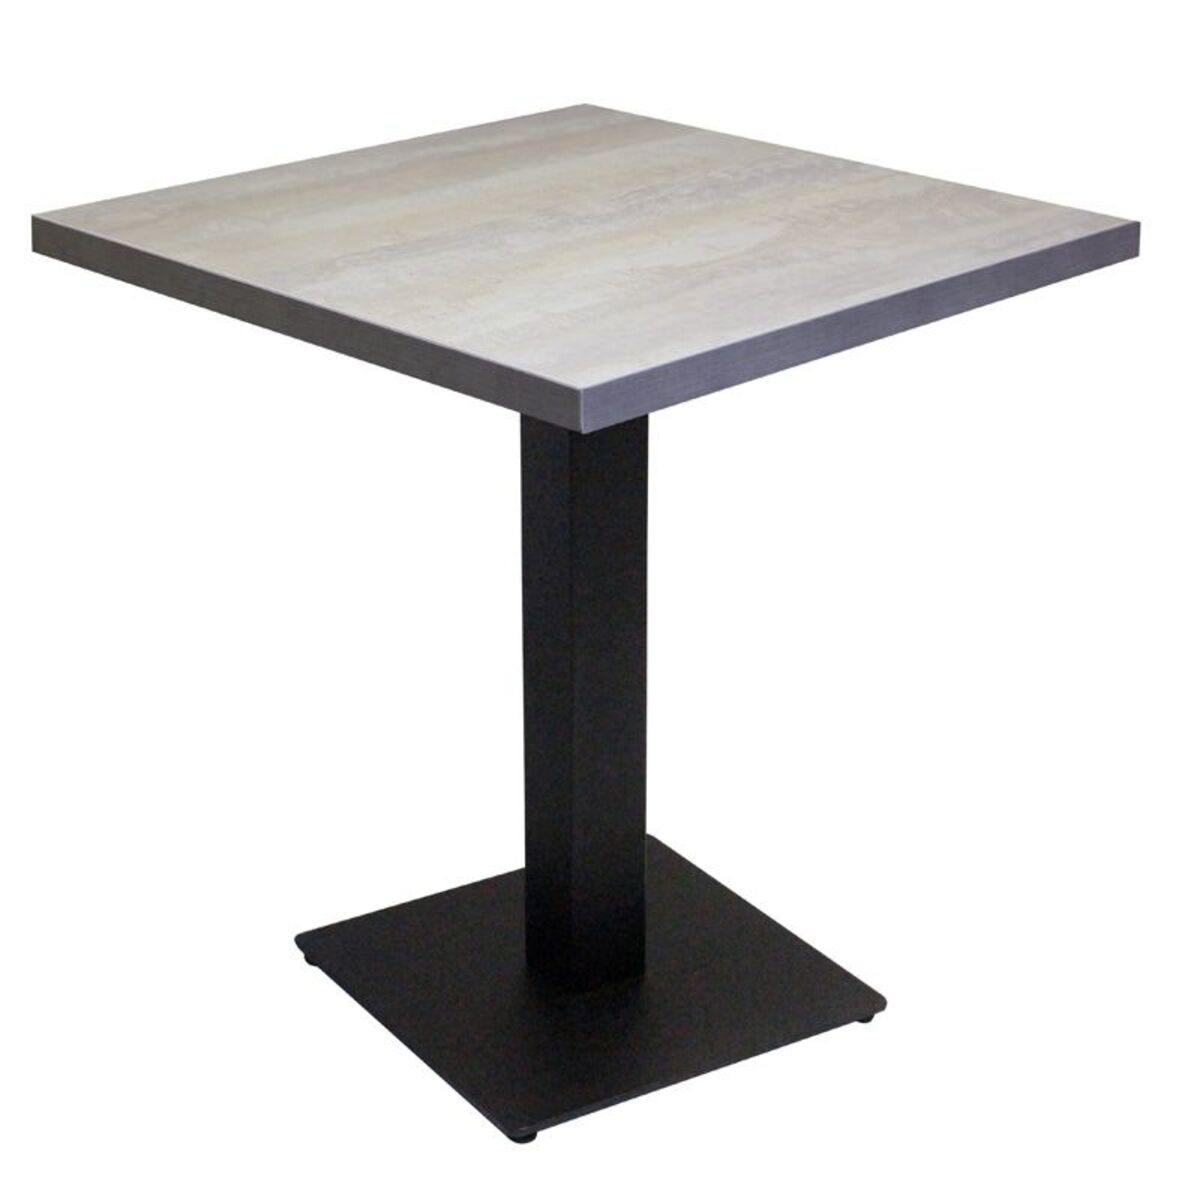 Table intérieure pied noir base carrée & plateau tavola blanc 60x60 cm